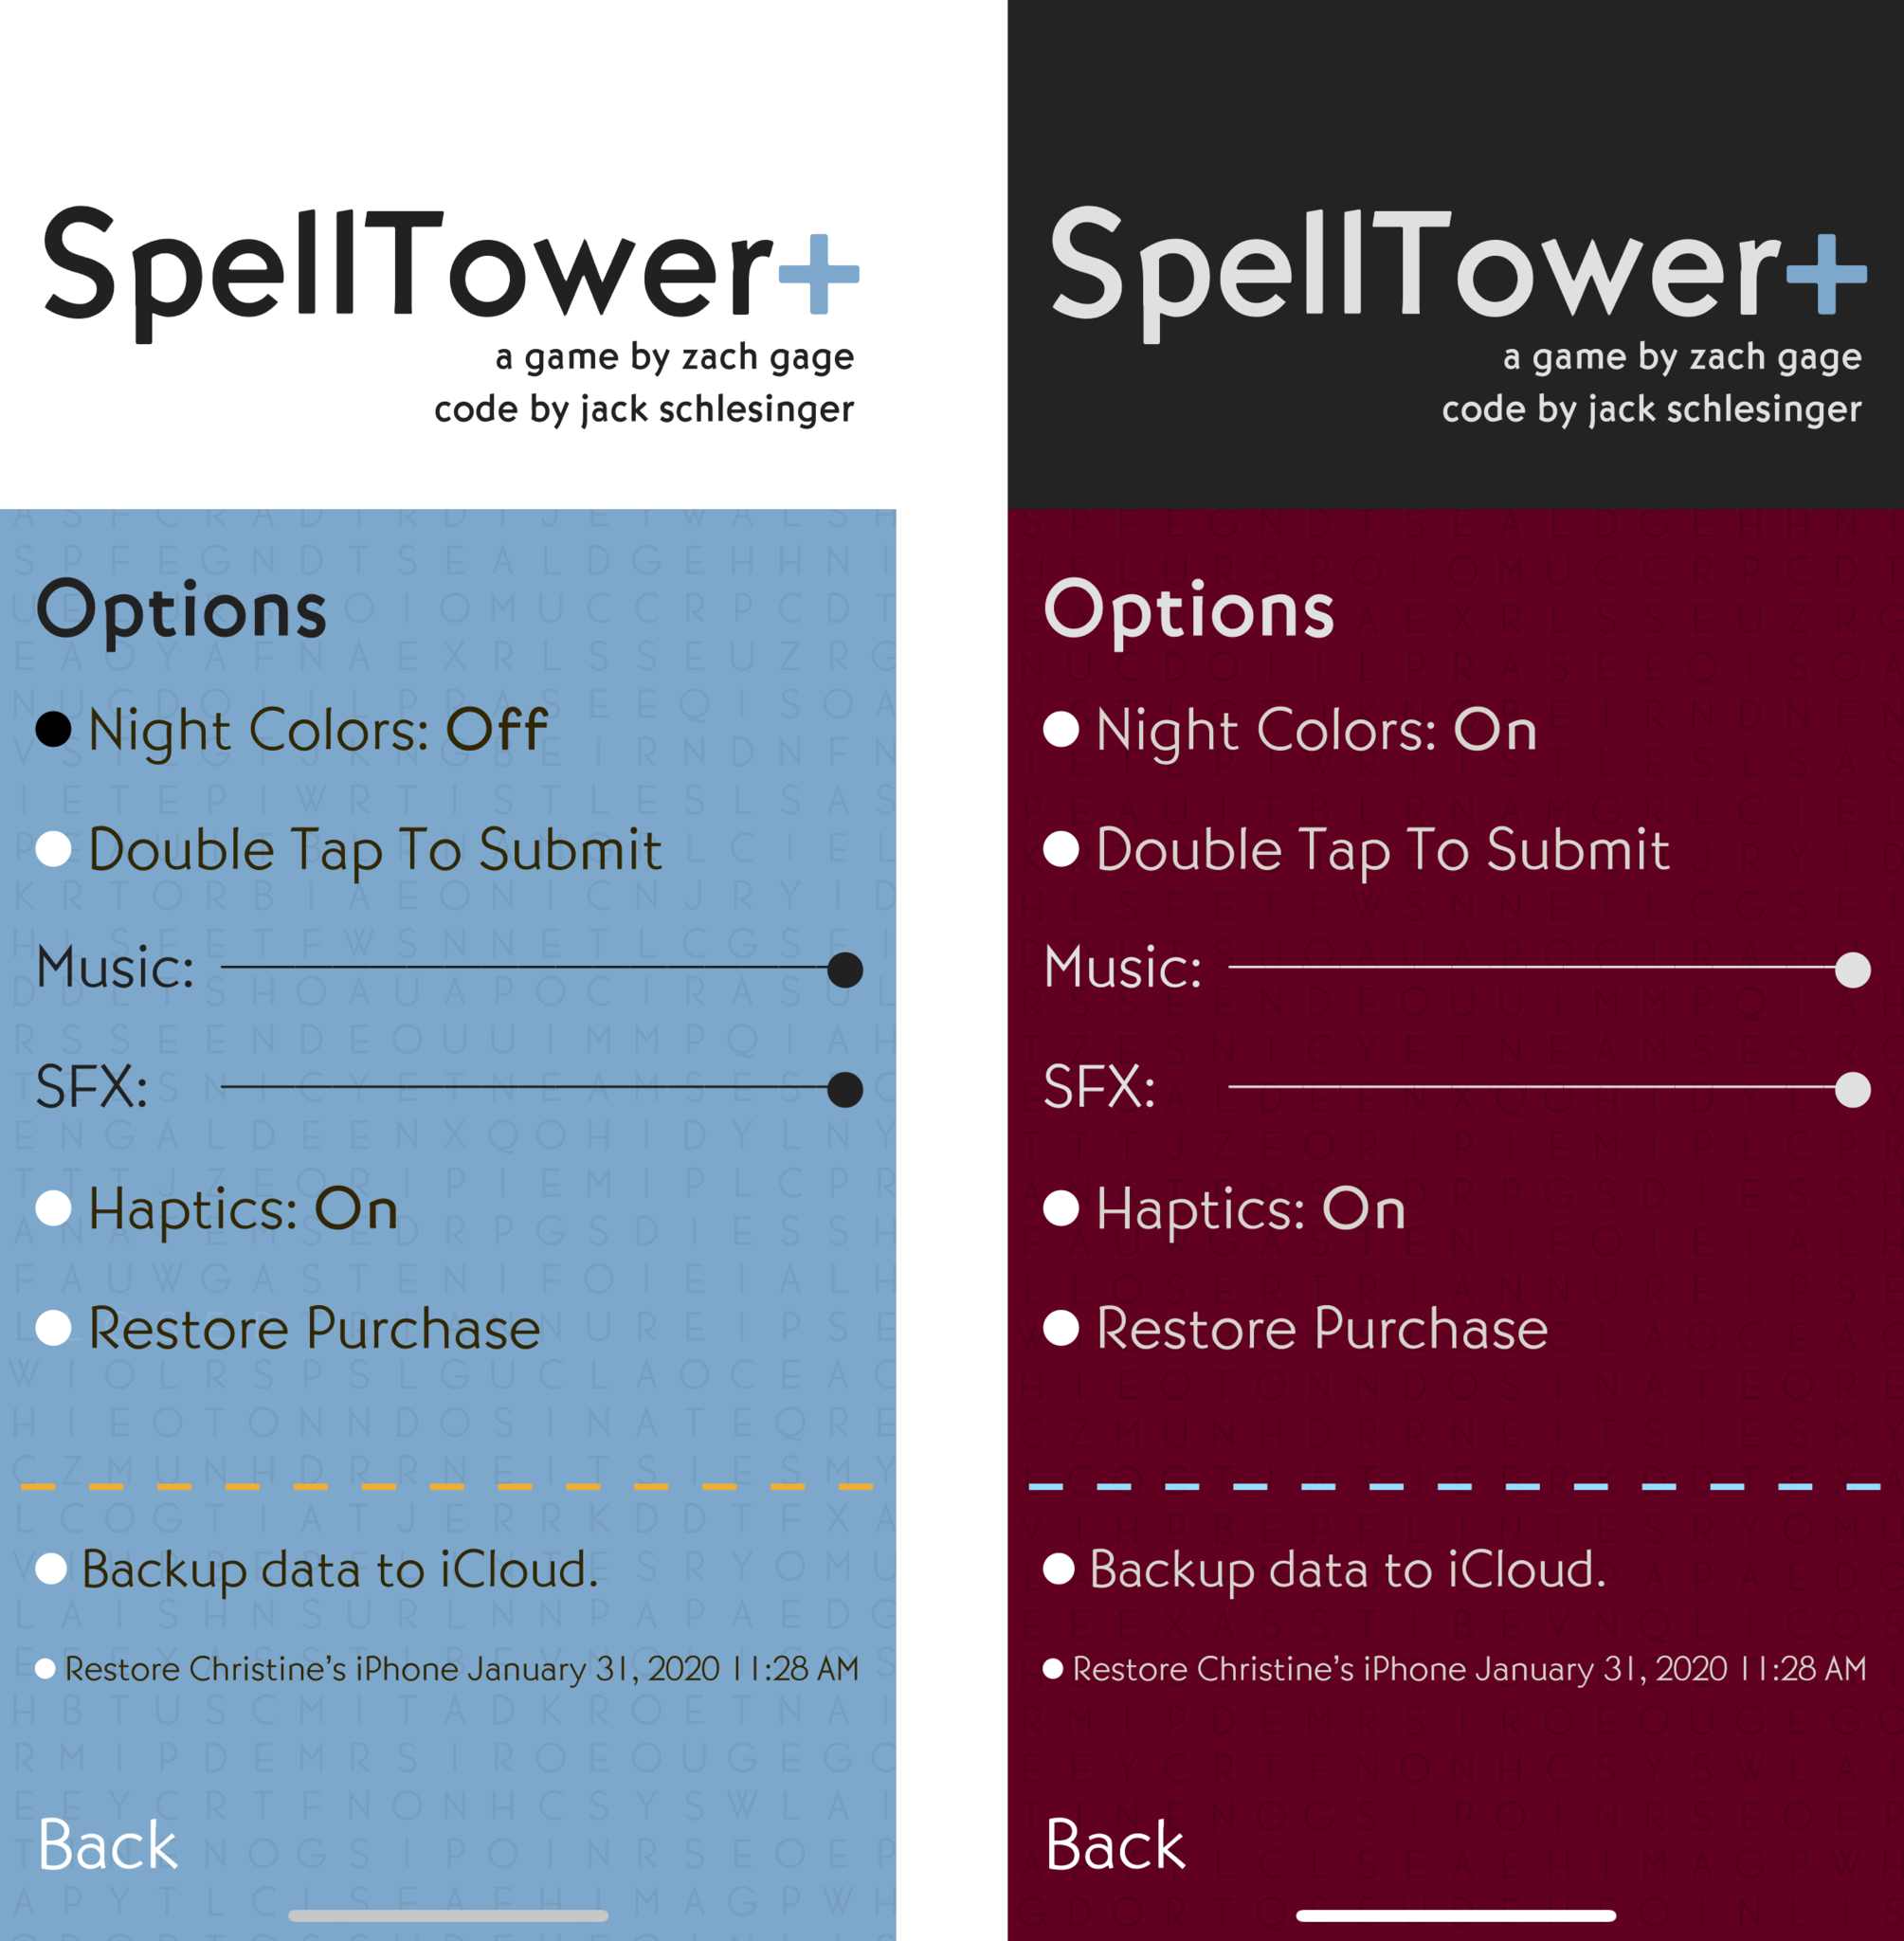 SpellTower+ options